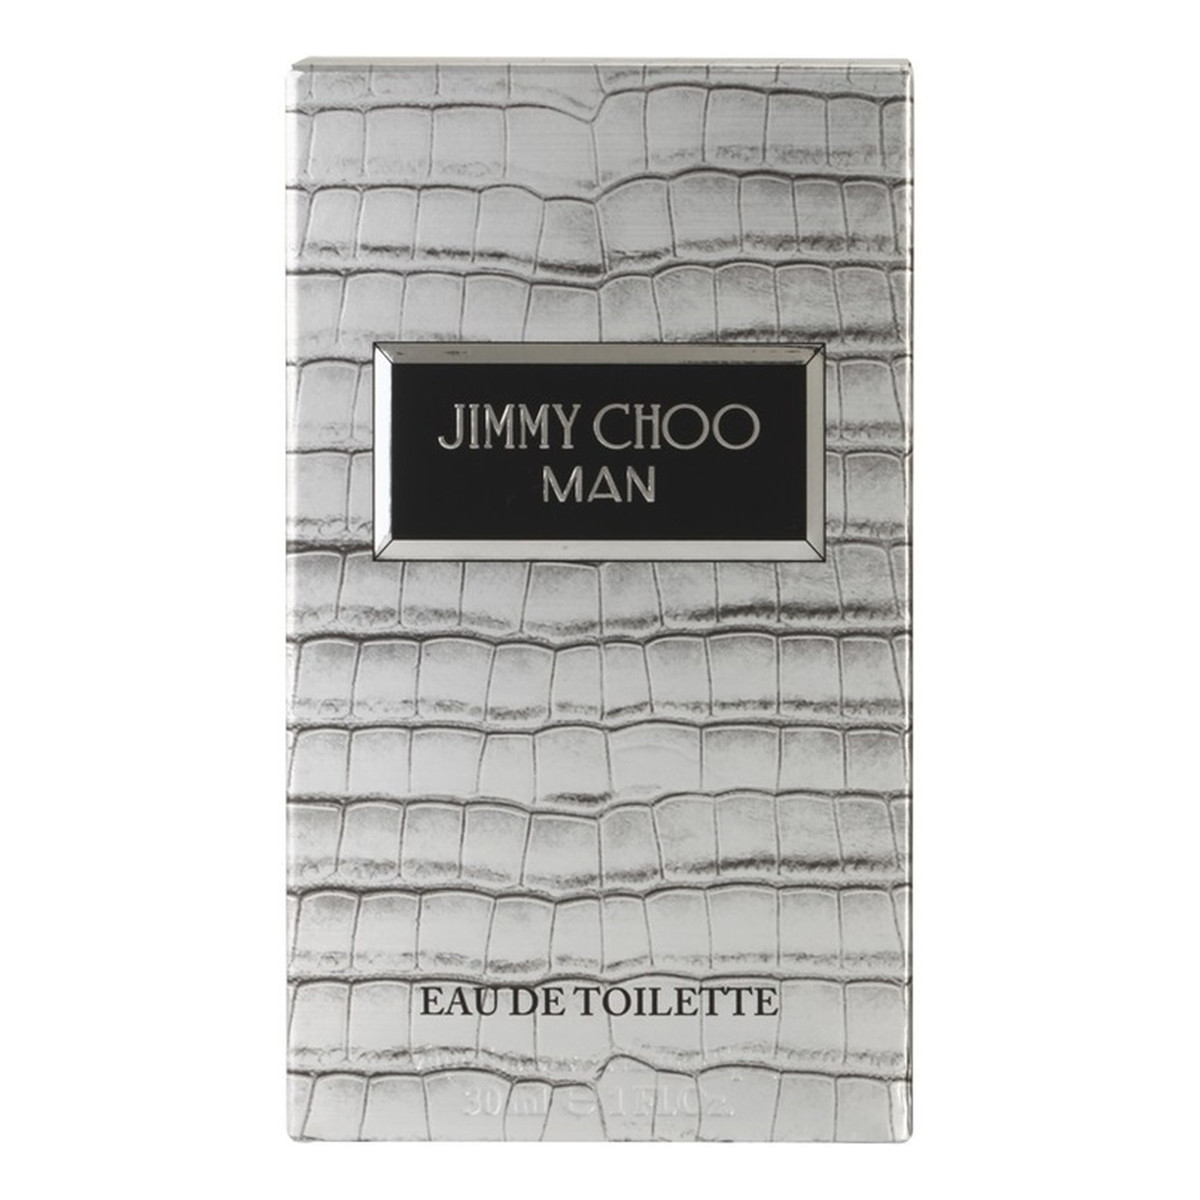 Jimmy Choo Man woda toaletowa 30ml